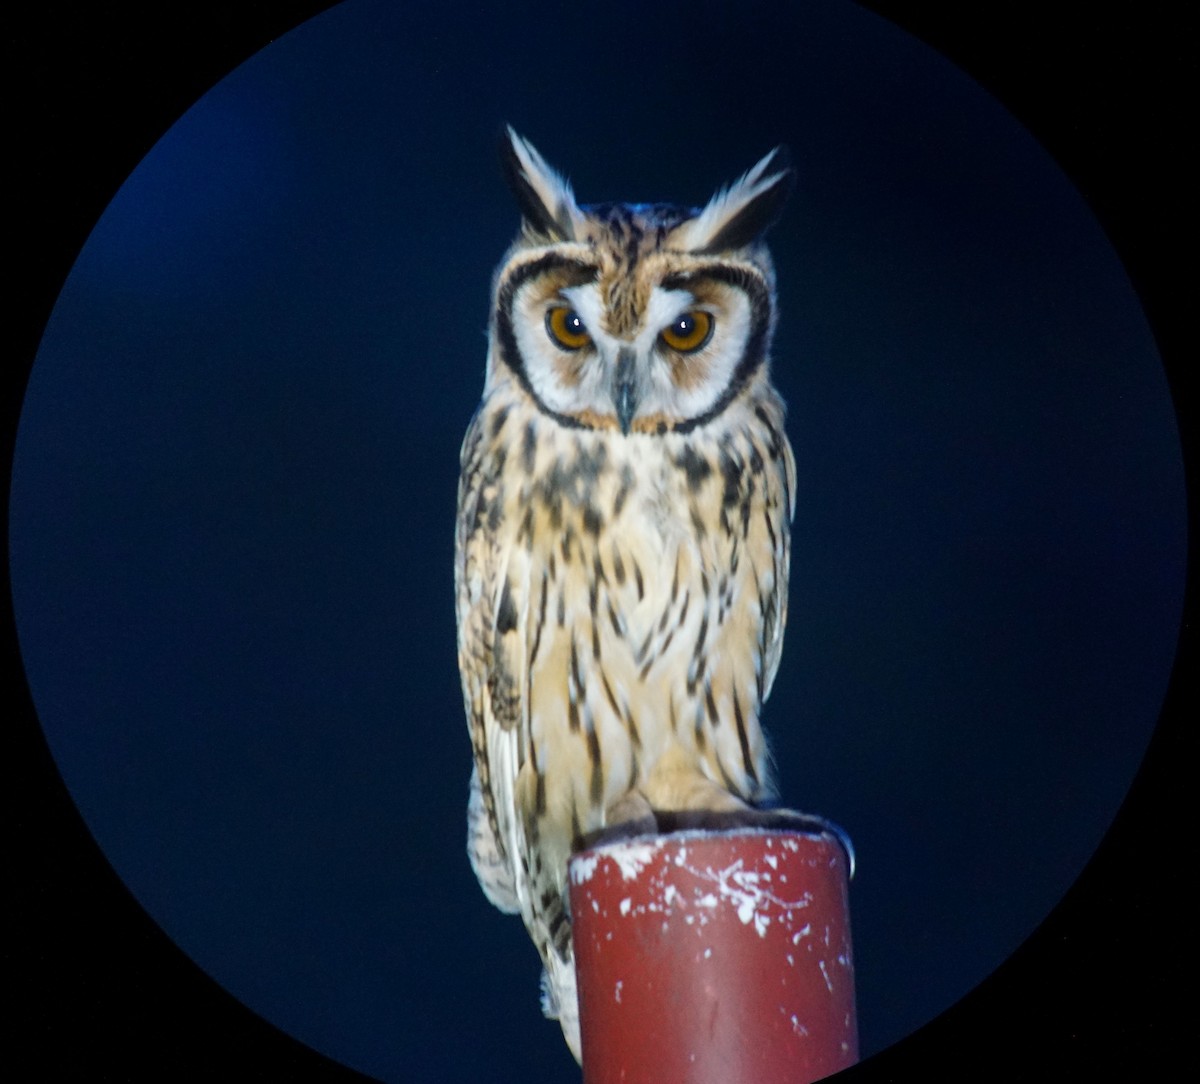 Striped Owl - William Orellana (Beaks and Peaks)